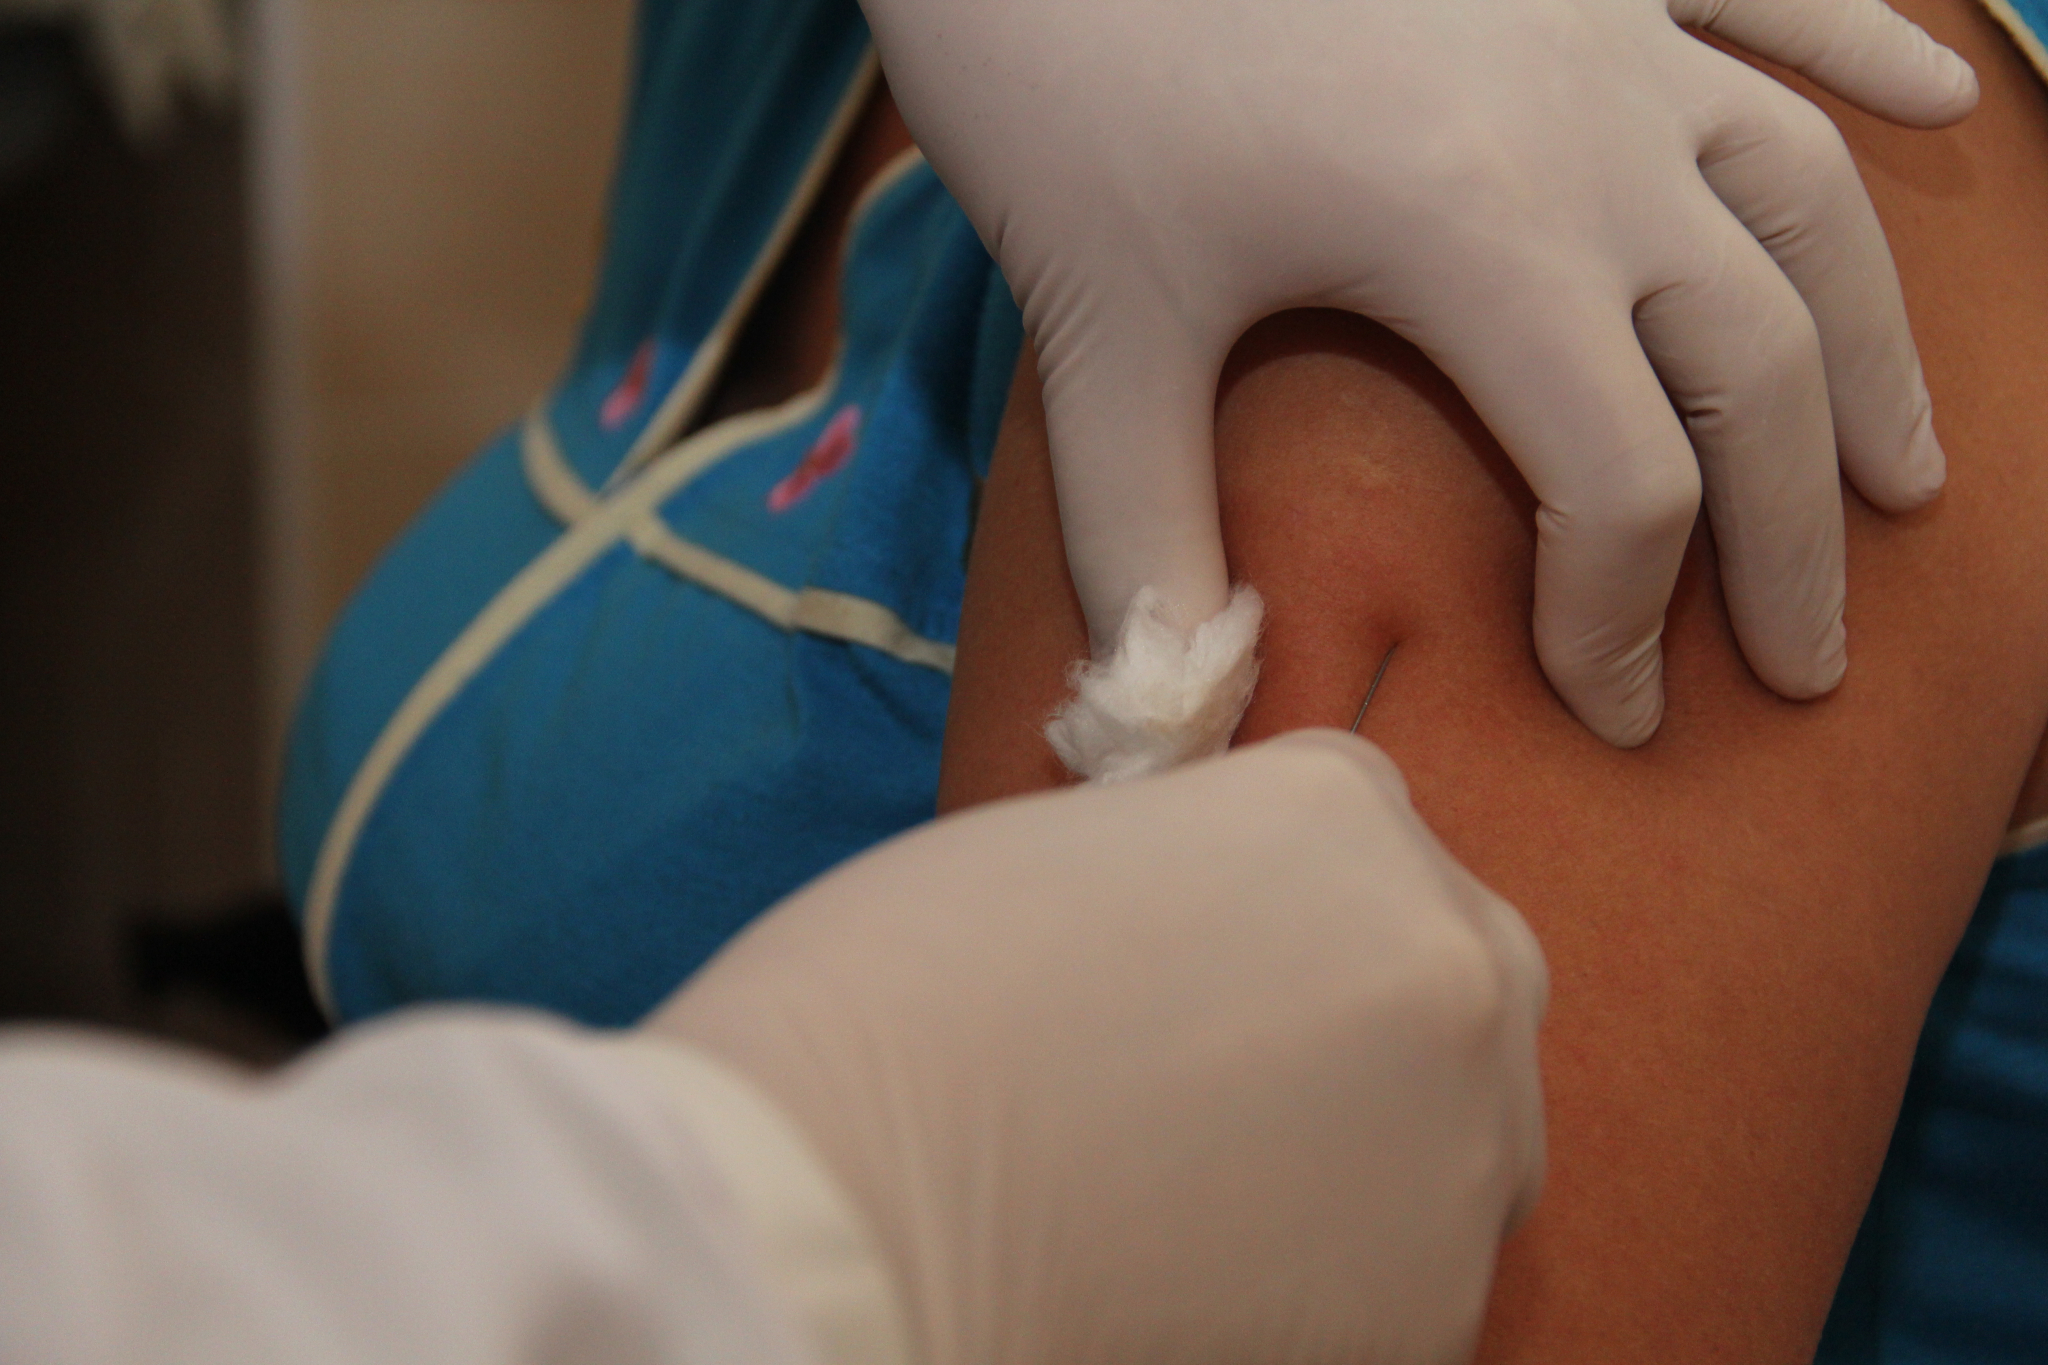 Новая вакцина против гриппа появится в больницах Нижгородской области